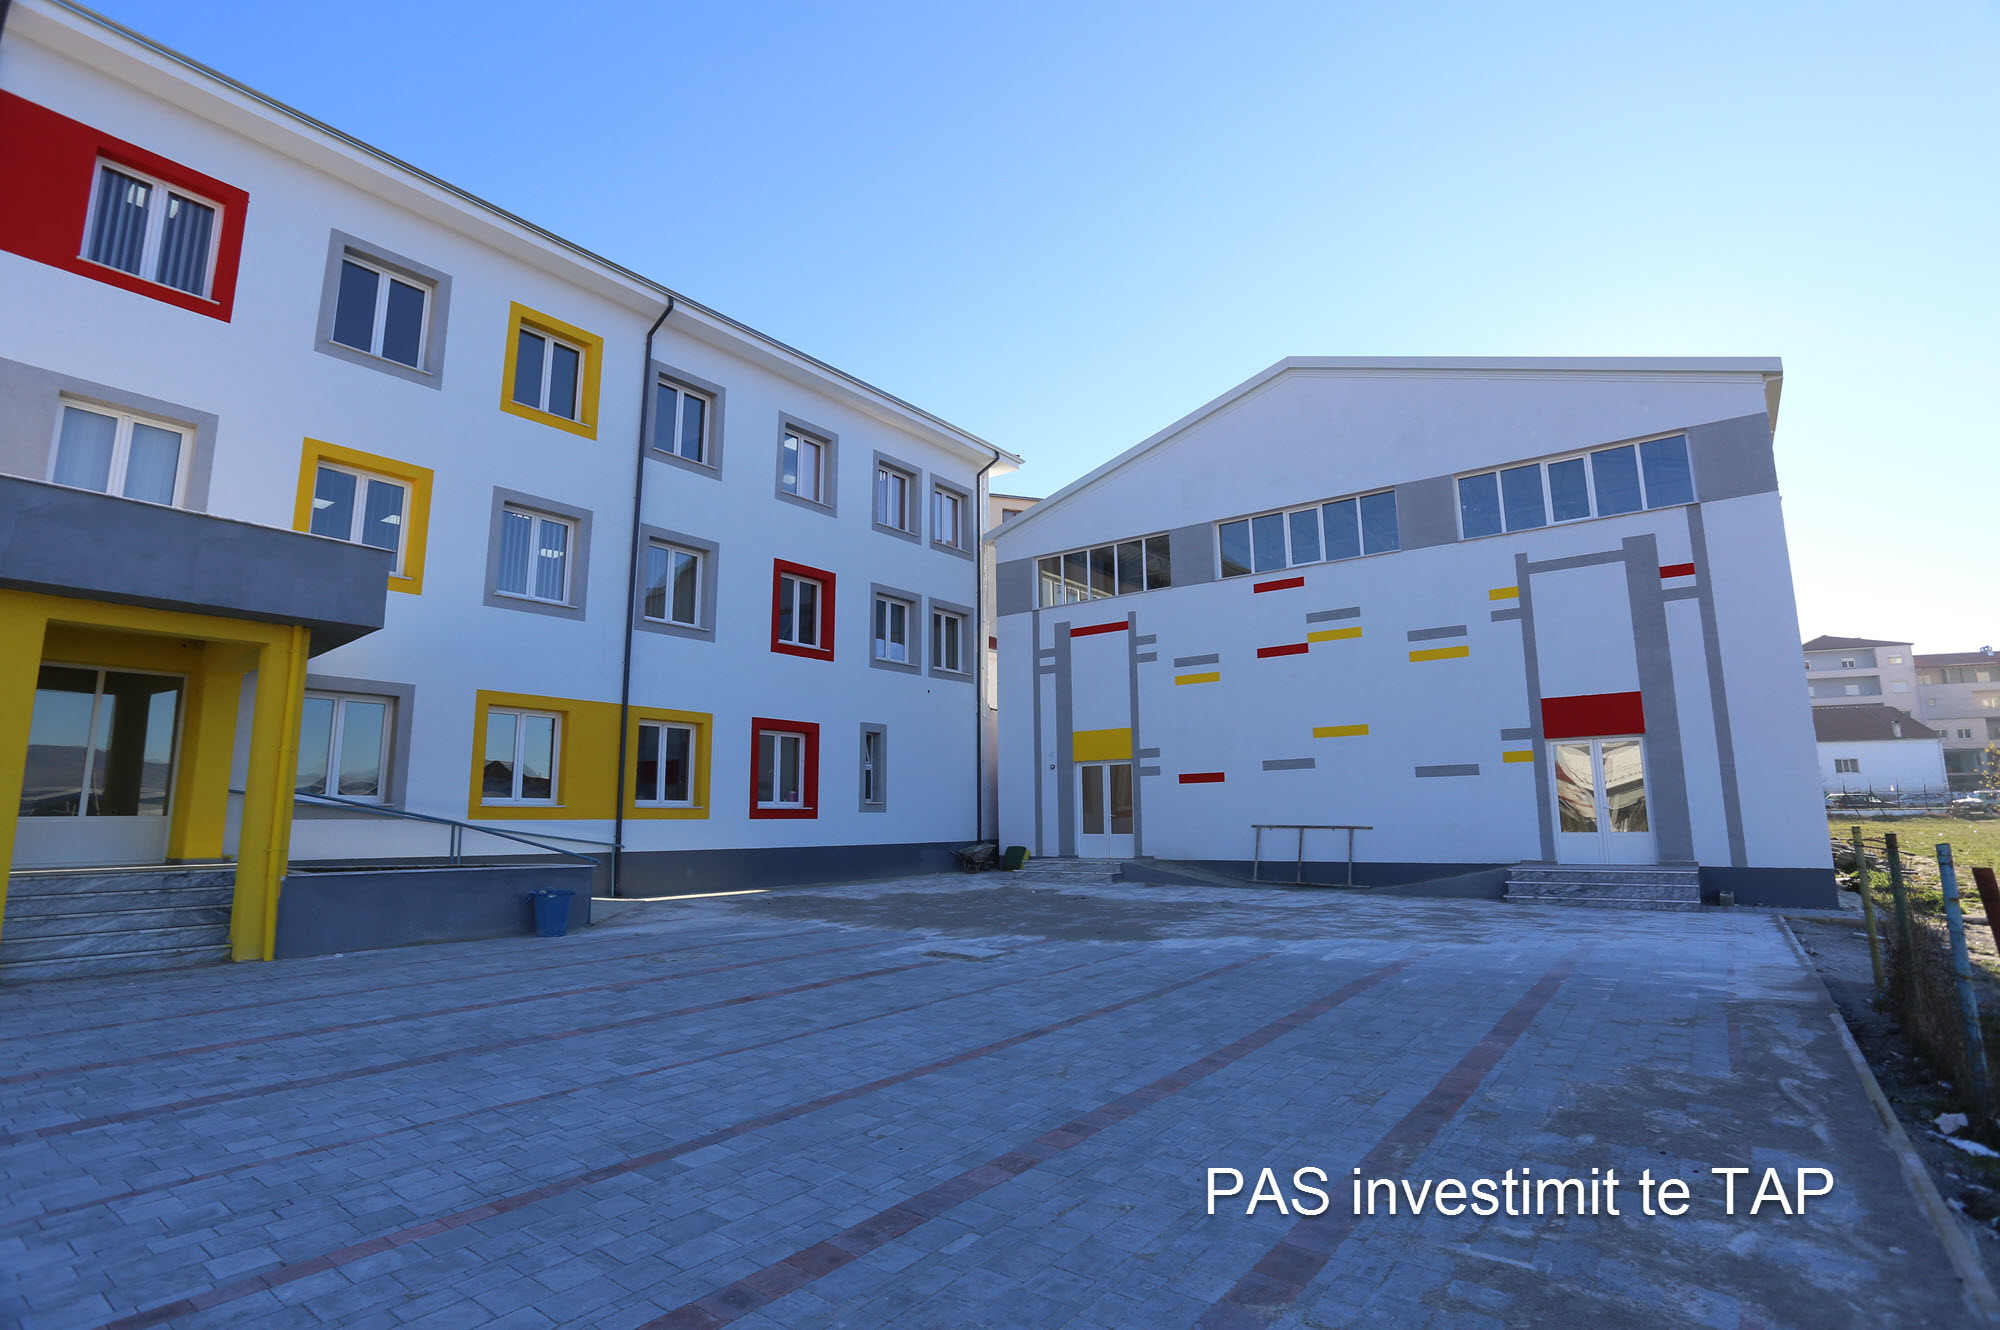 TAP investon rreth 600 000 euro per rikostruksionin e gjimnazit te Bilishtit